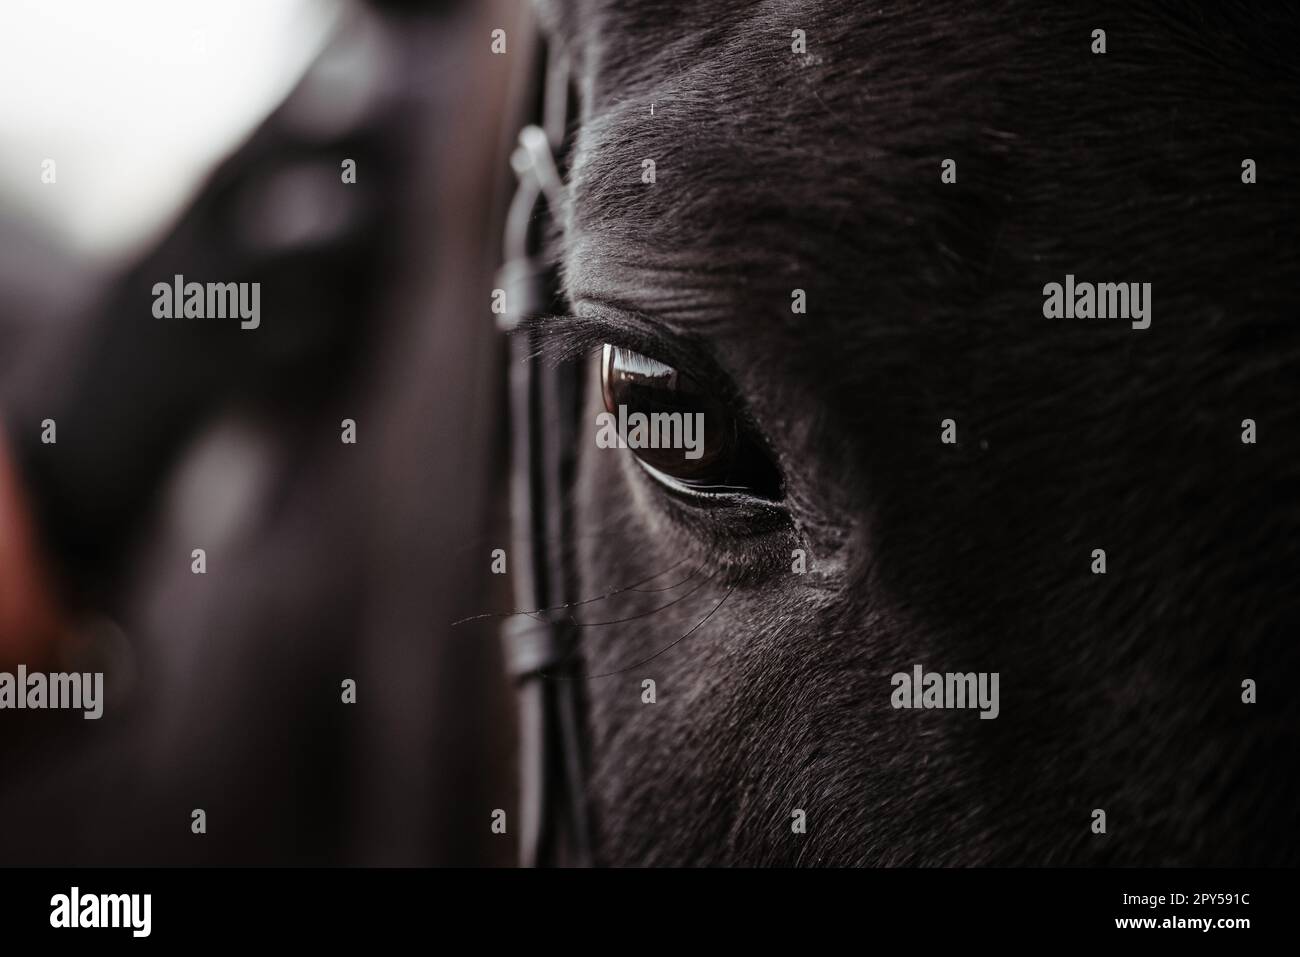 Schwarzes Pferd, Augenpferd nah oben, schwarzes Wildpferd im natürlichen Hintergrund, Porträt des Pferdes, Makroschuss eines Pferdeauges Stockfoto